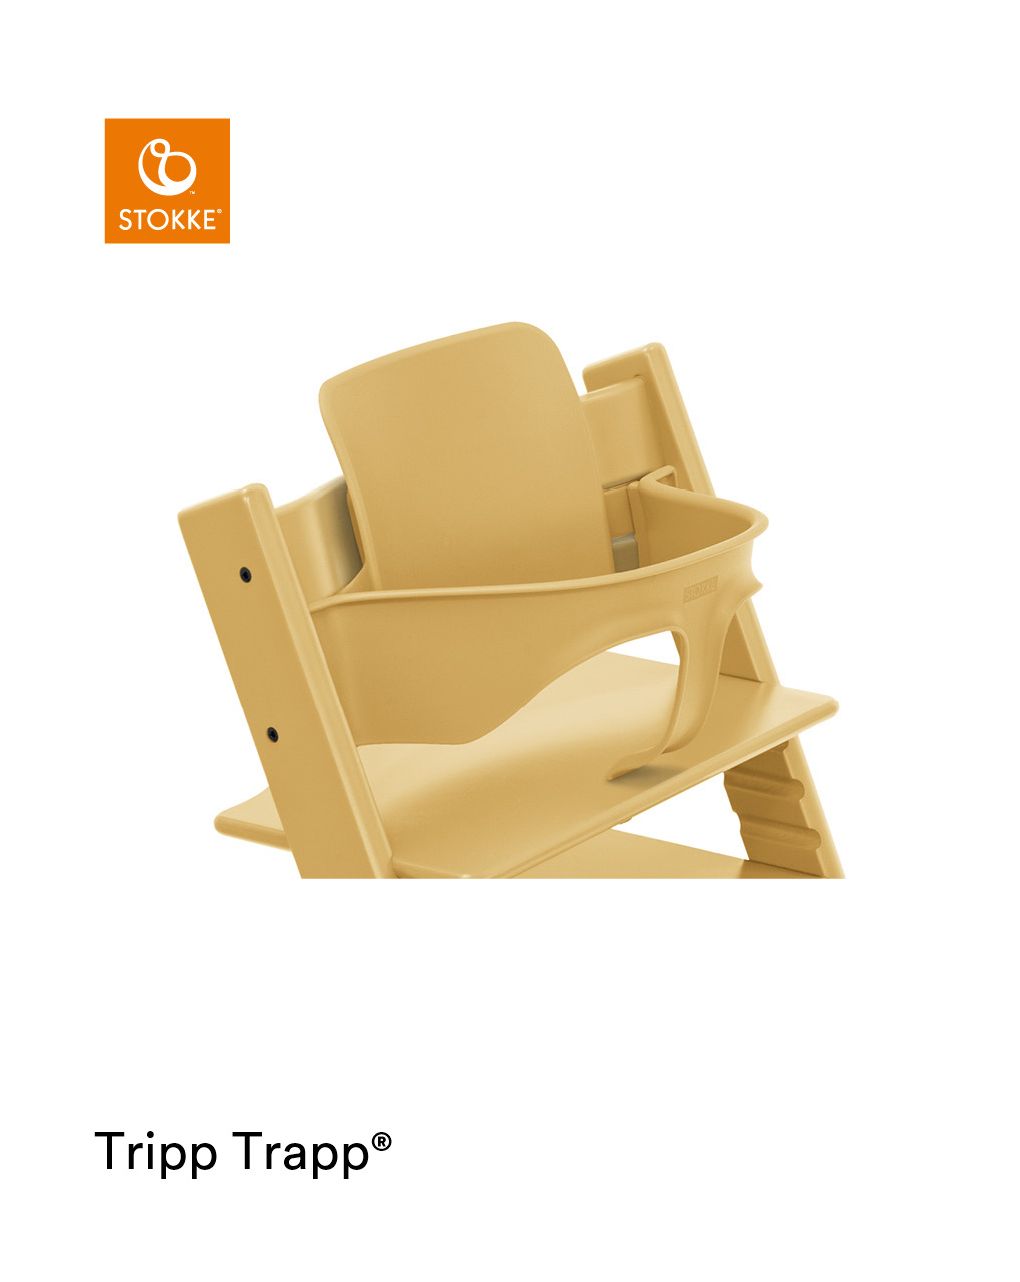 Tripp trapp® baby set transforma sua cadeira tripp trapp® em uma cadeira alta confortável - Stokke